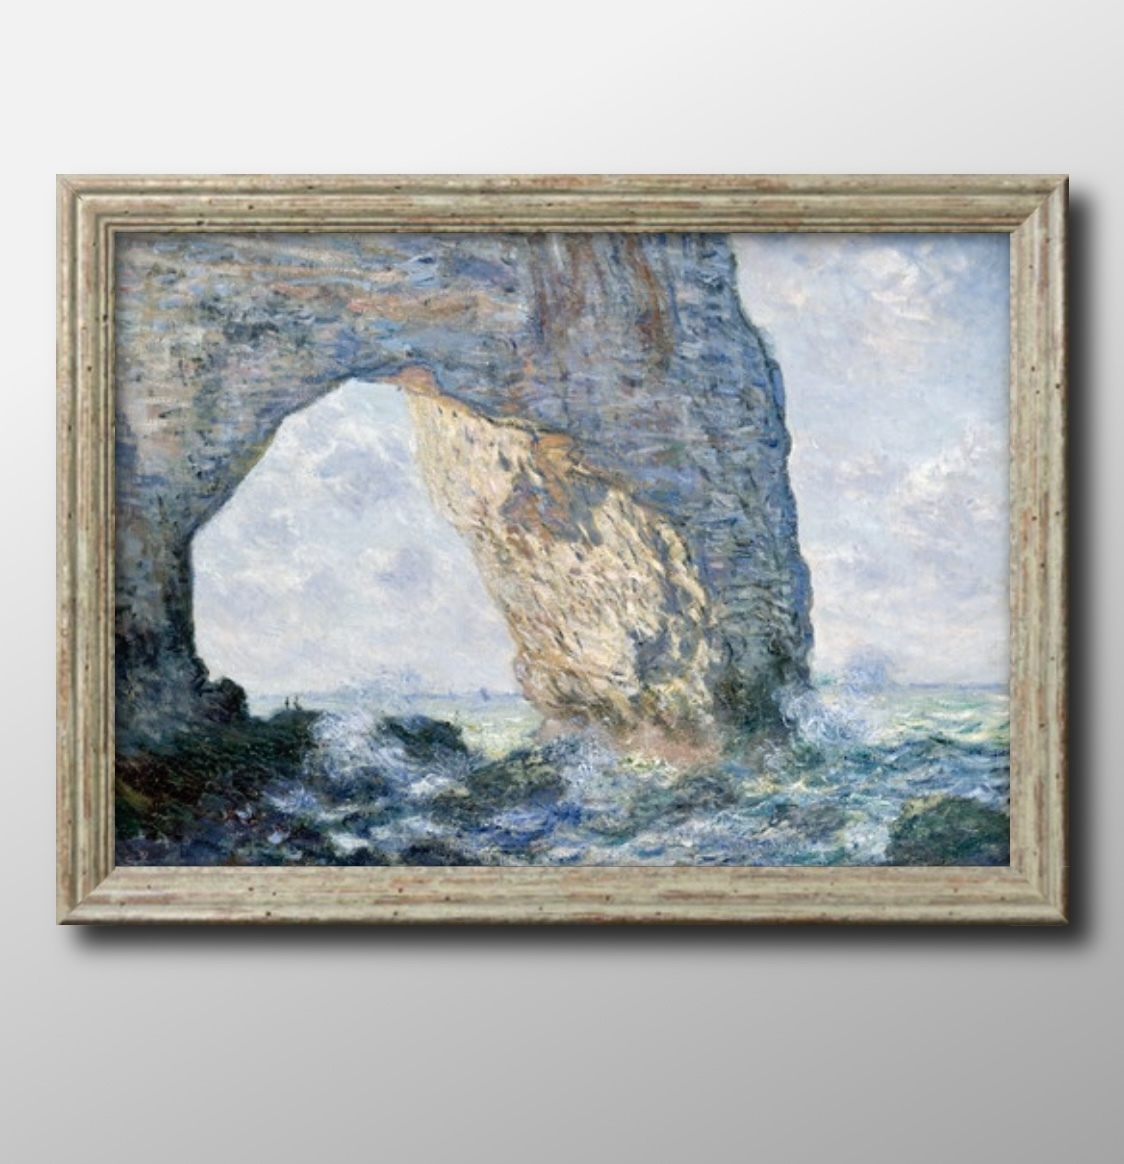 1053 ■ ¡Envío gratis! Póster Artístico con pintura tamaño A3, ilustración de Claude Monet La Manneporte, papel mate escandinavo, residencia, interior, otros